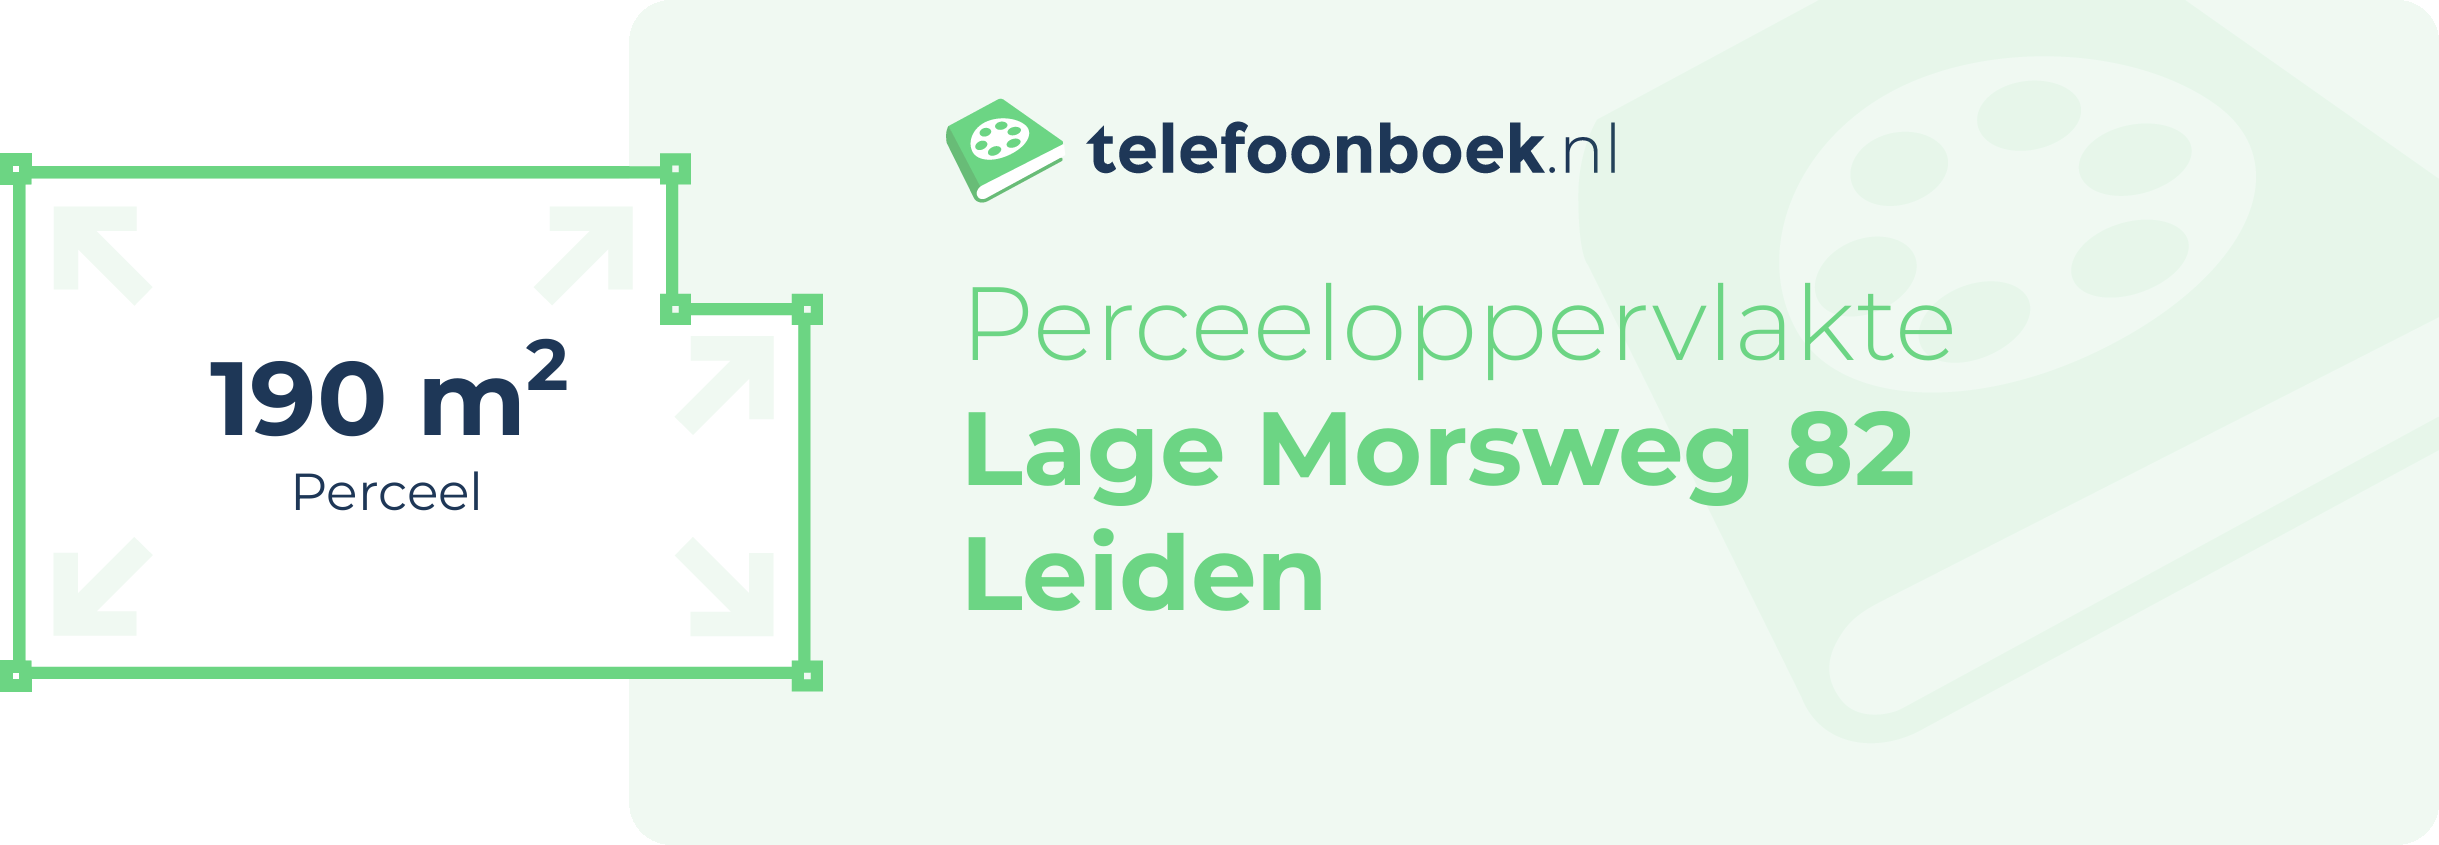 Perceeloppervlakte Lage Morsweg 82 Leiden